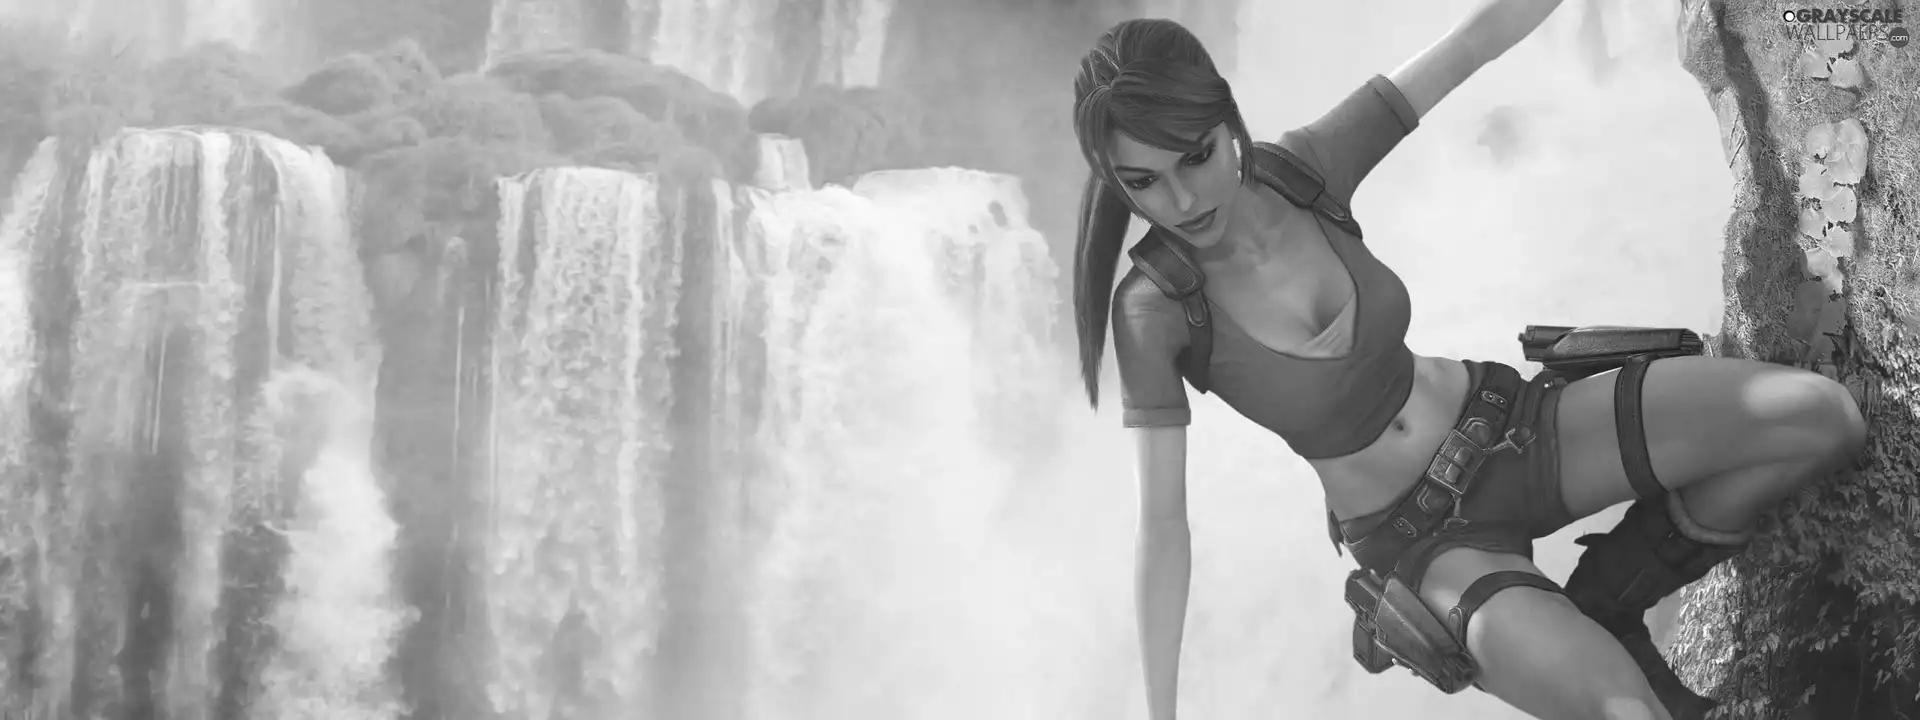 Tomb Raider, rocks, waterfall